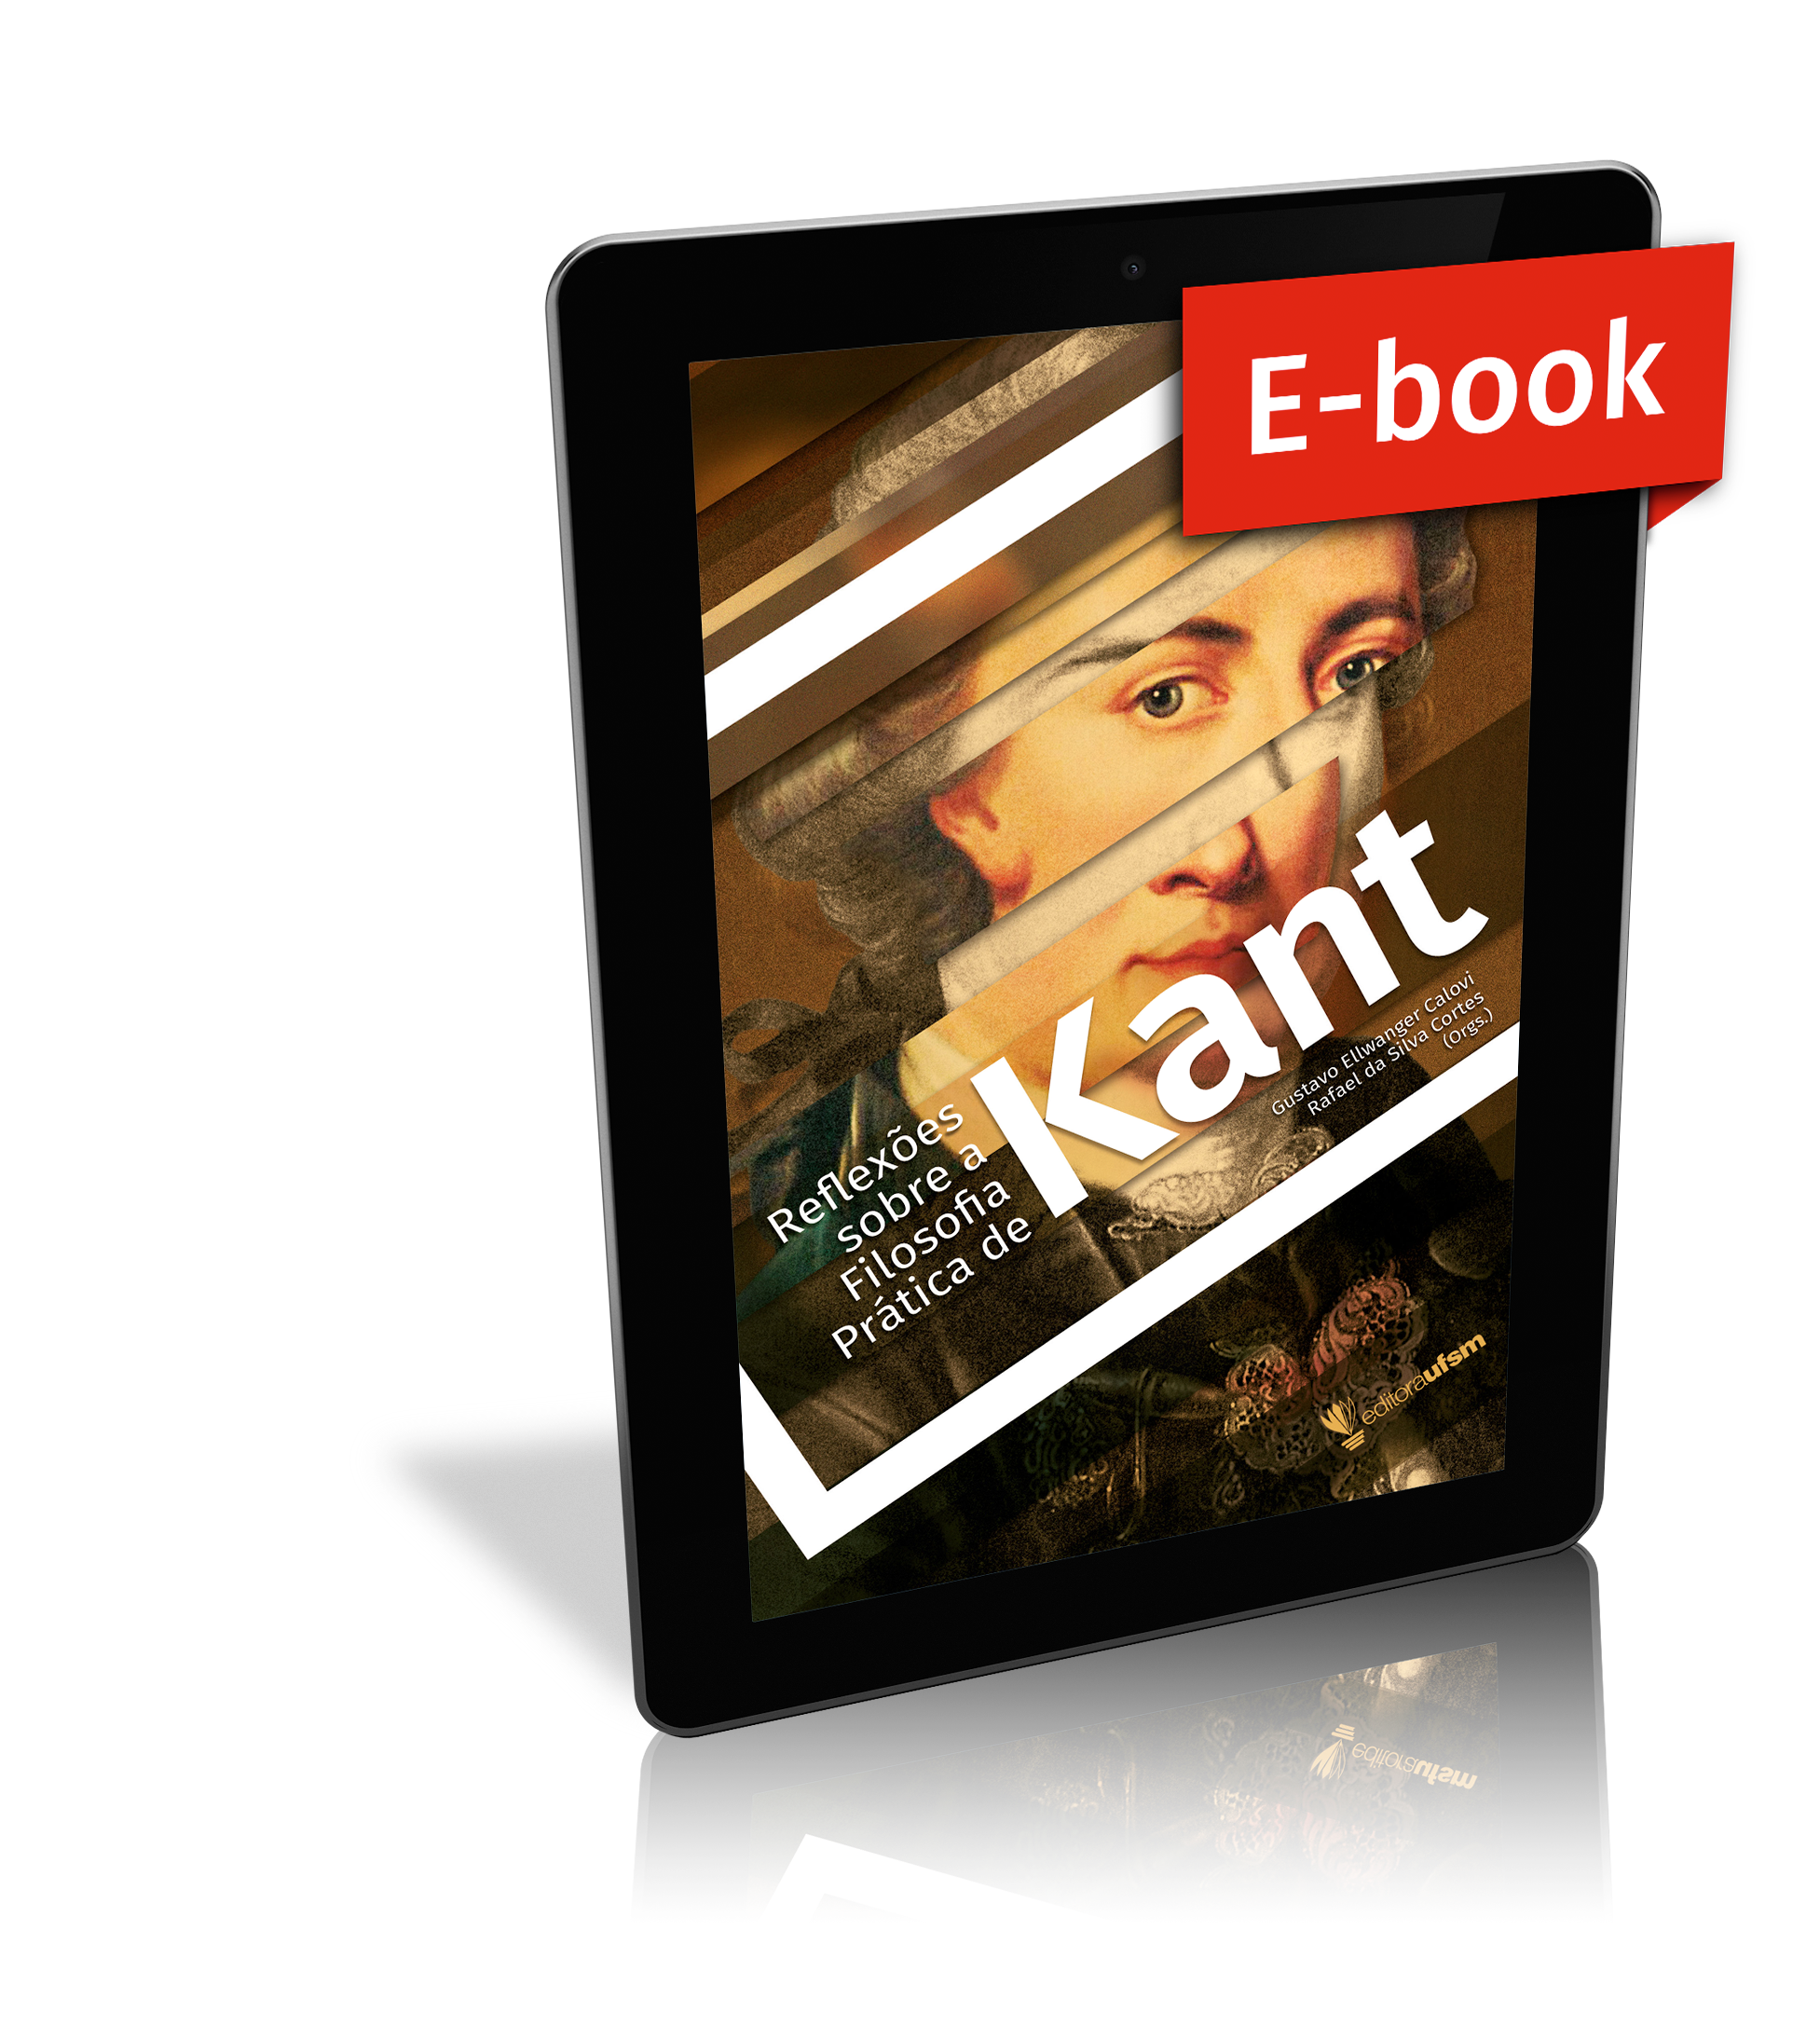 Capa do ebook Reflexões sobre a filosofia prática de Kant